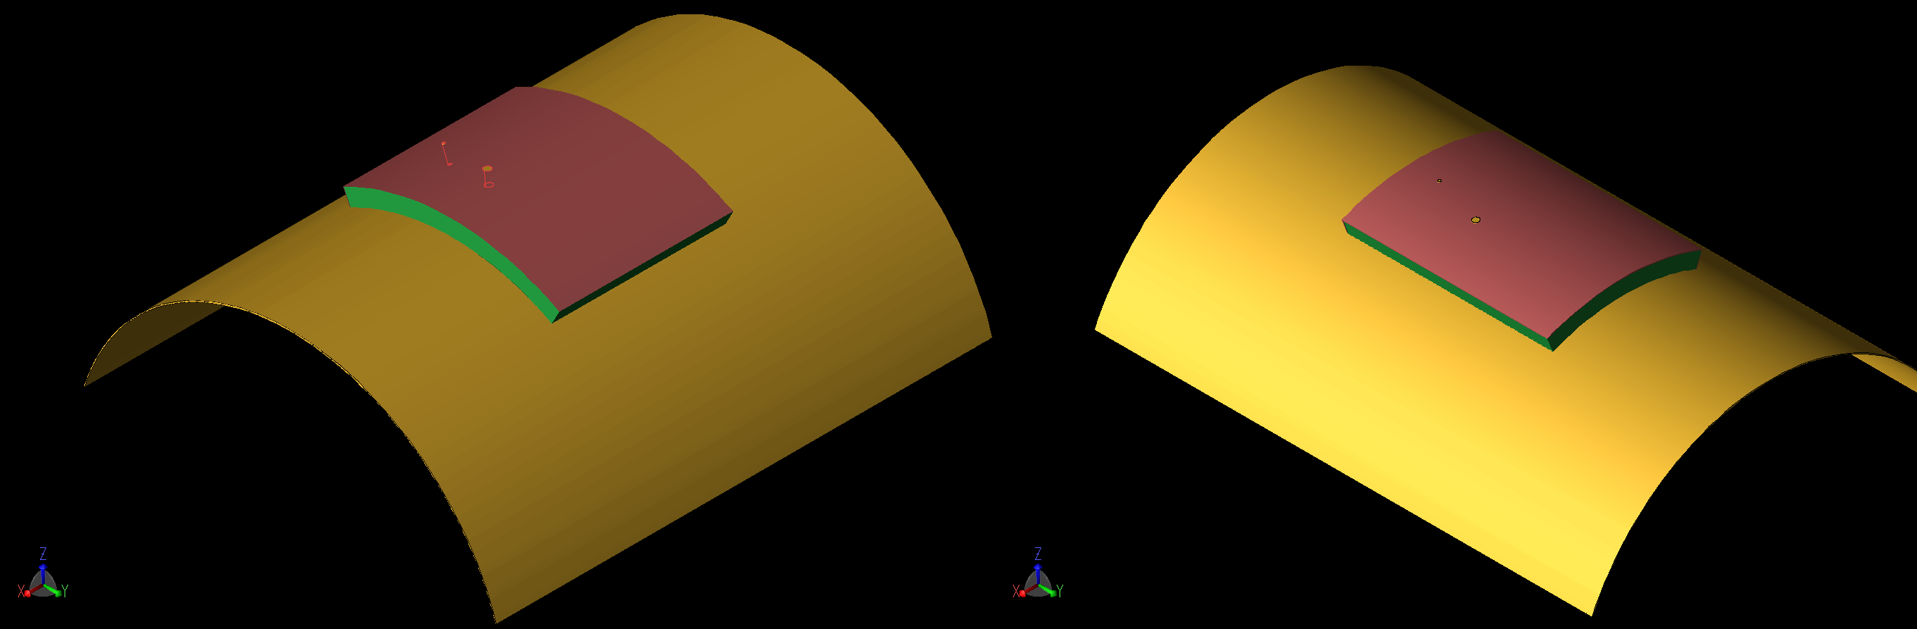 图 7：贴片为曲线配置，曲线半径为 40 毫米。左边（7a）的曲率围绕 X 轴，右边（7b）的曲率围绕 Y 轴。我们还模拟了曲率半径为 80 毫米的类似几何形状。